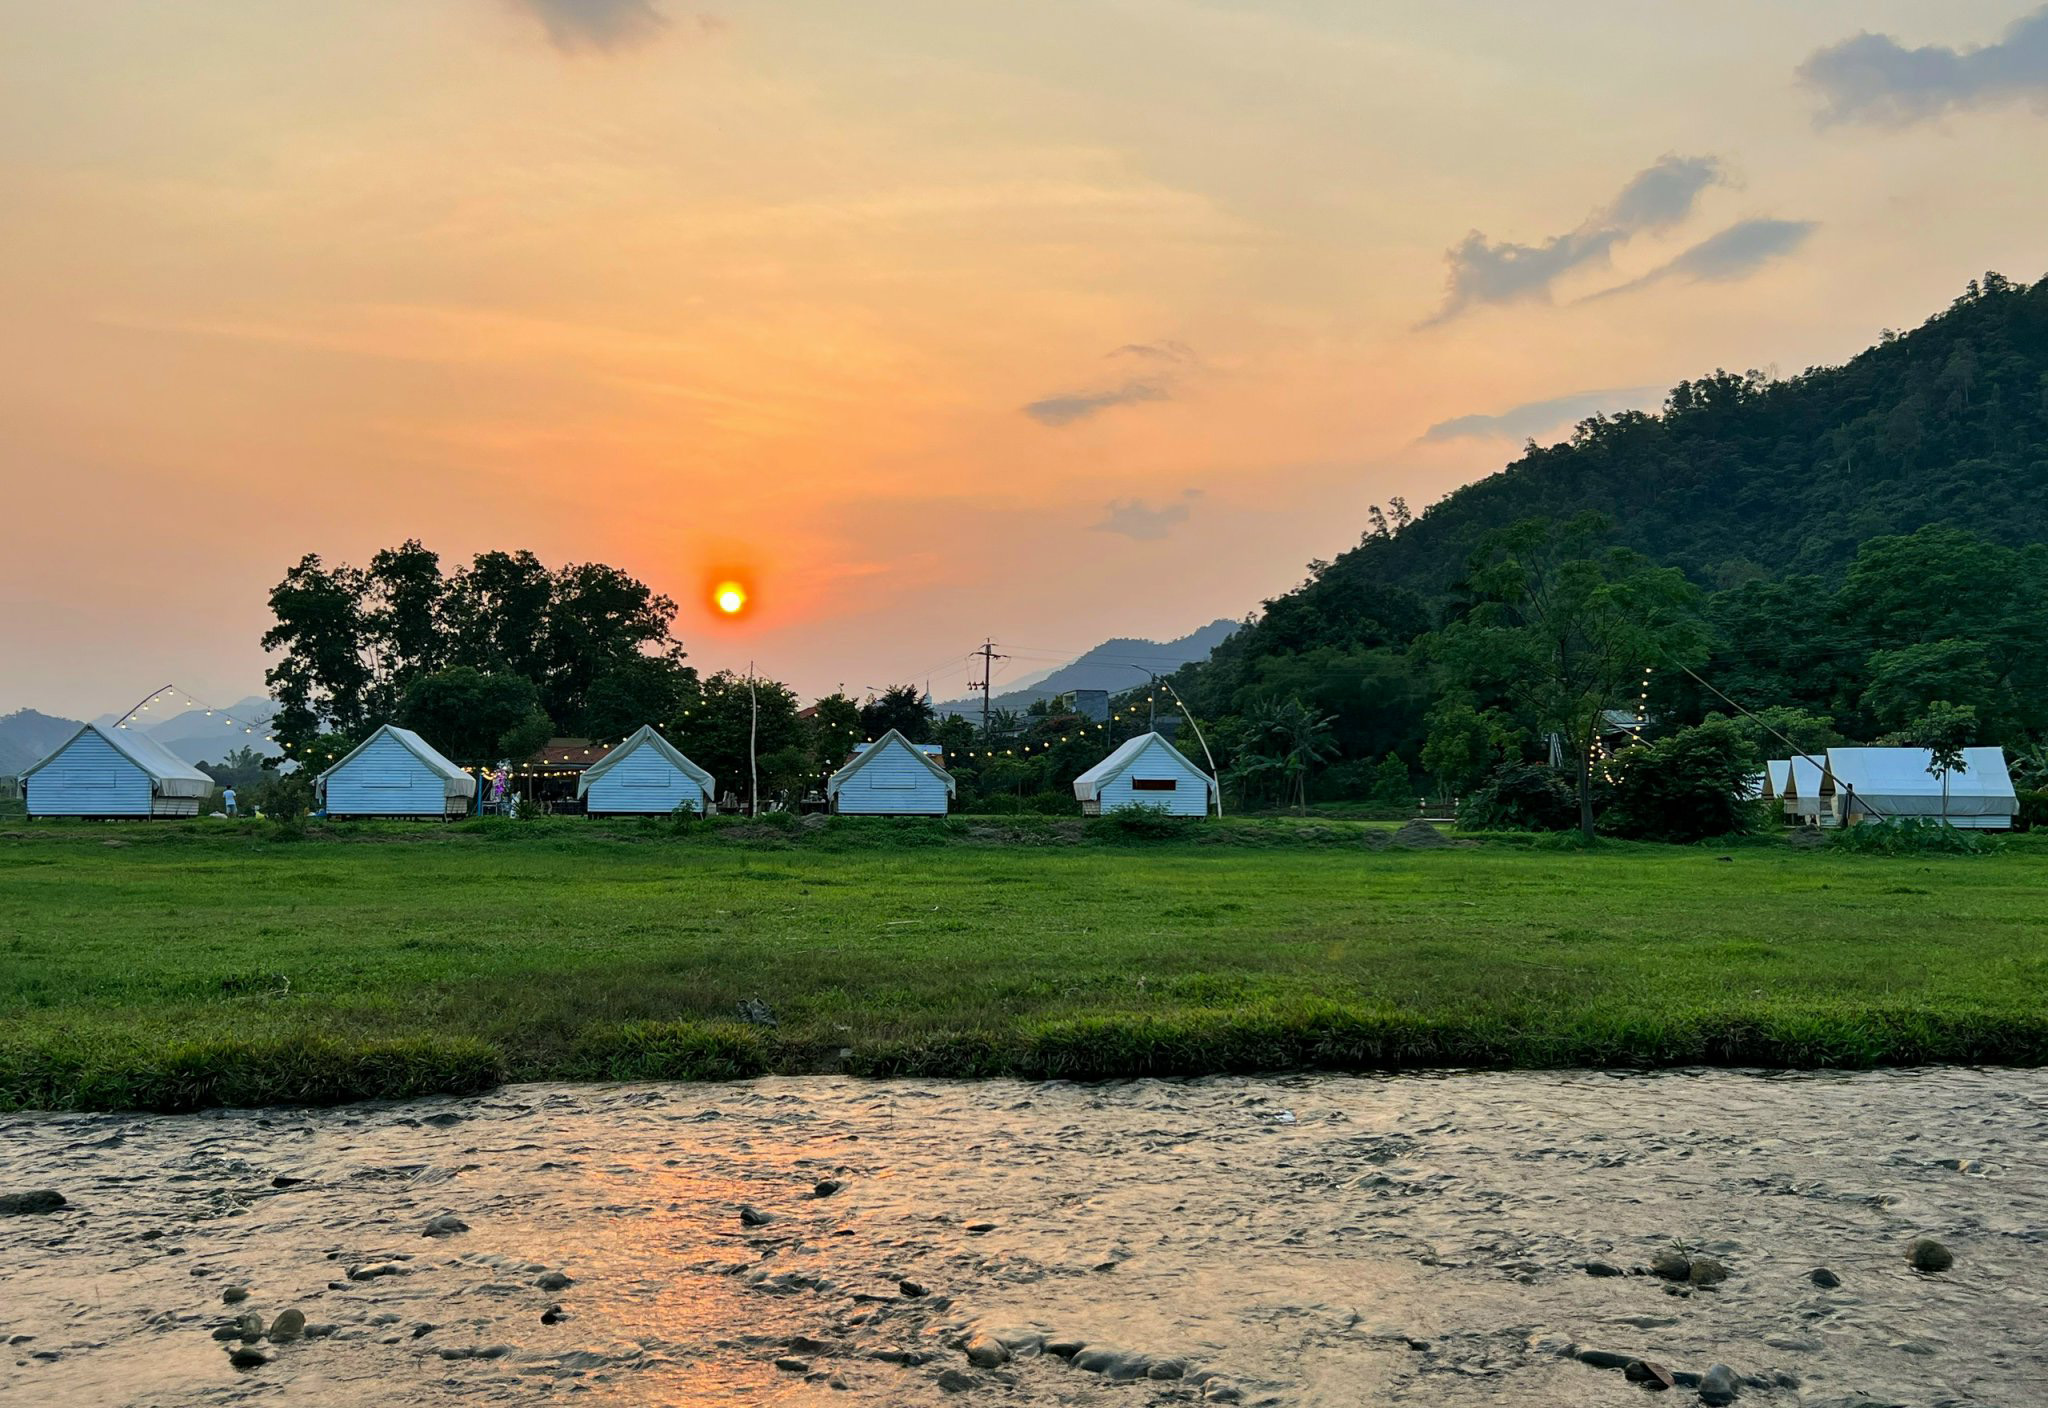 Ecotourism transforms mountainous commune in Da Nang